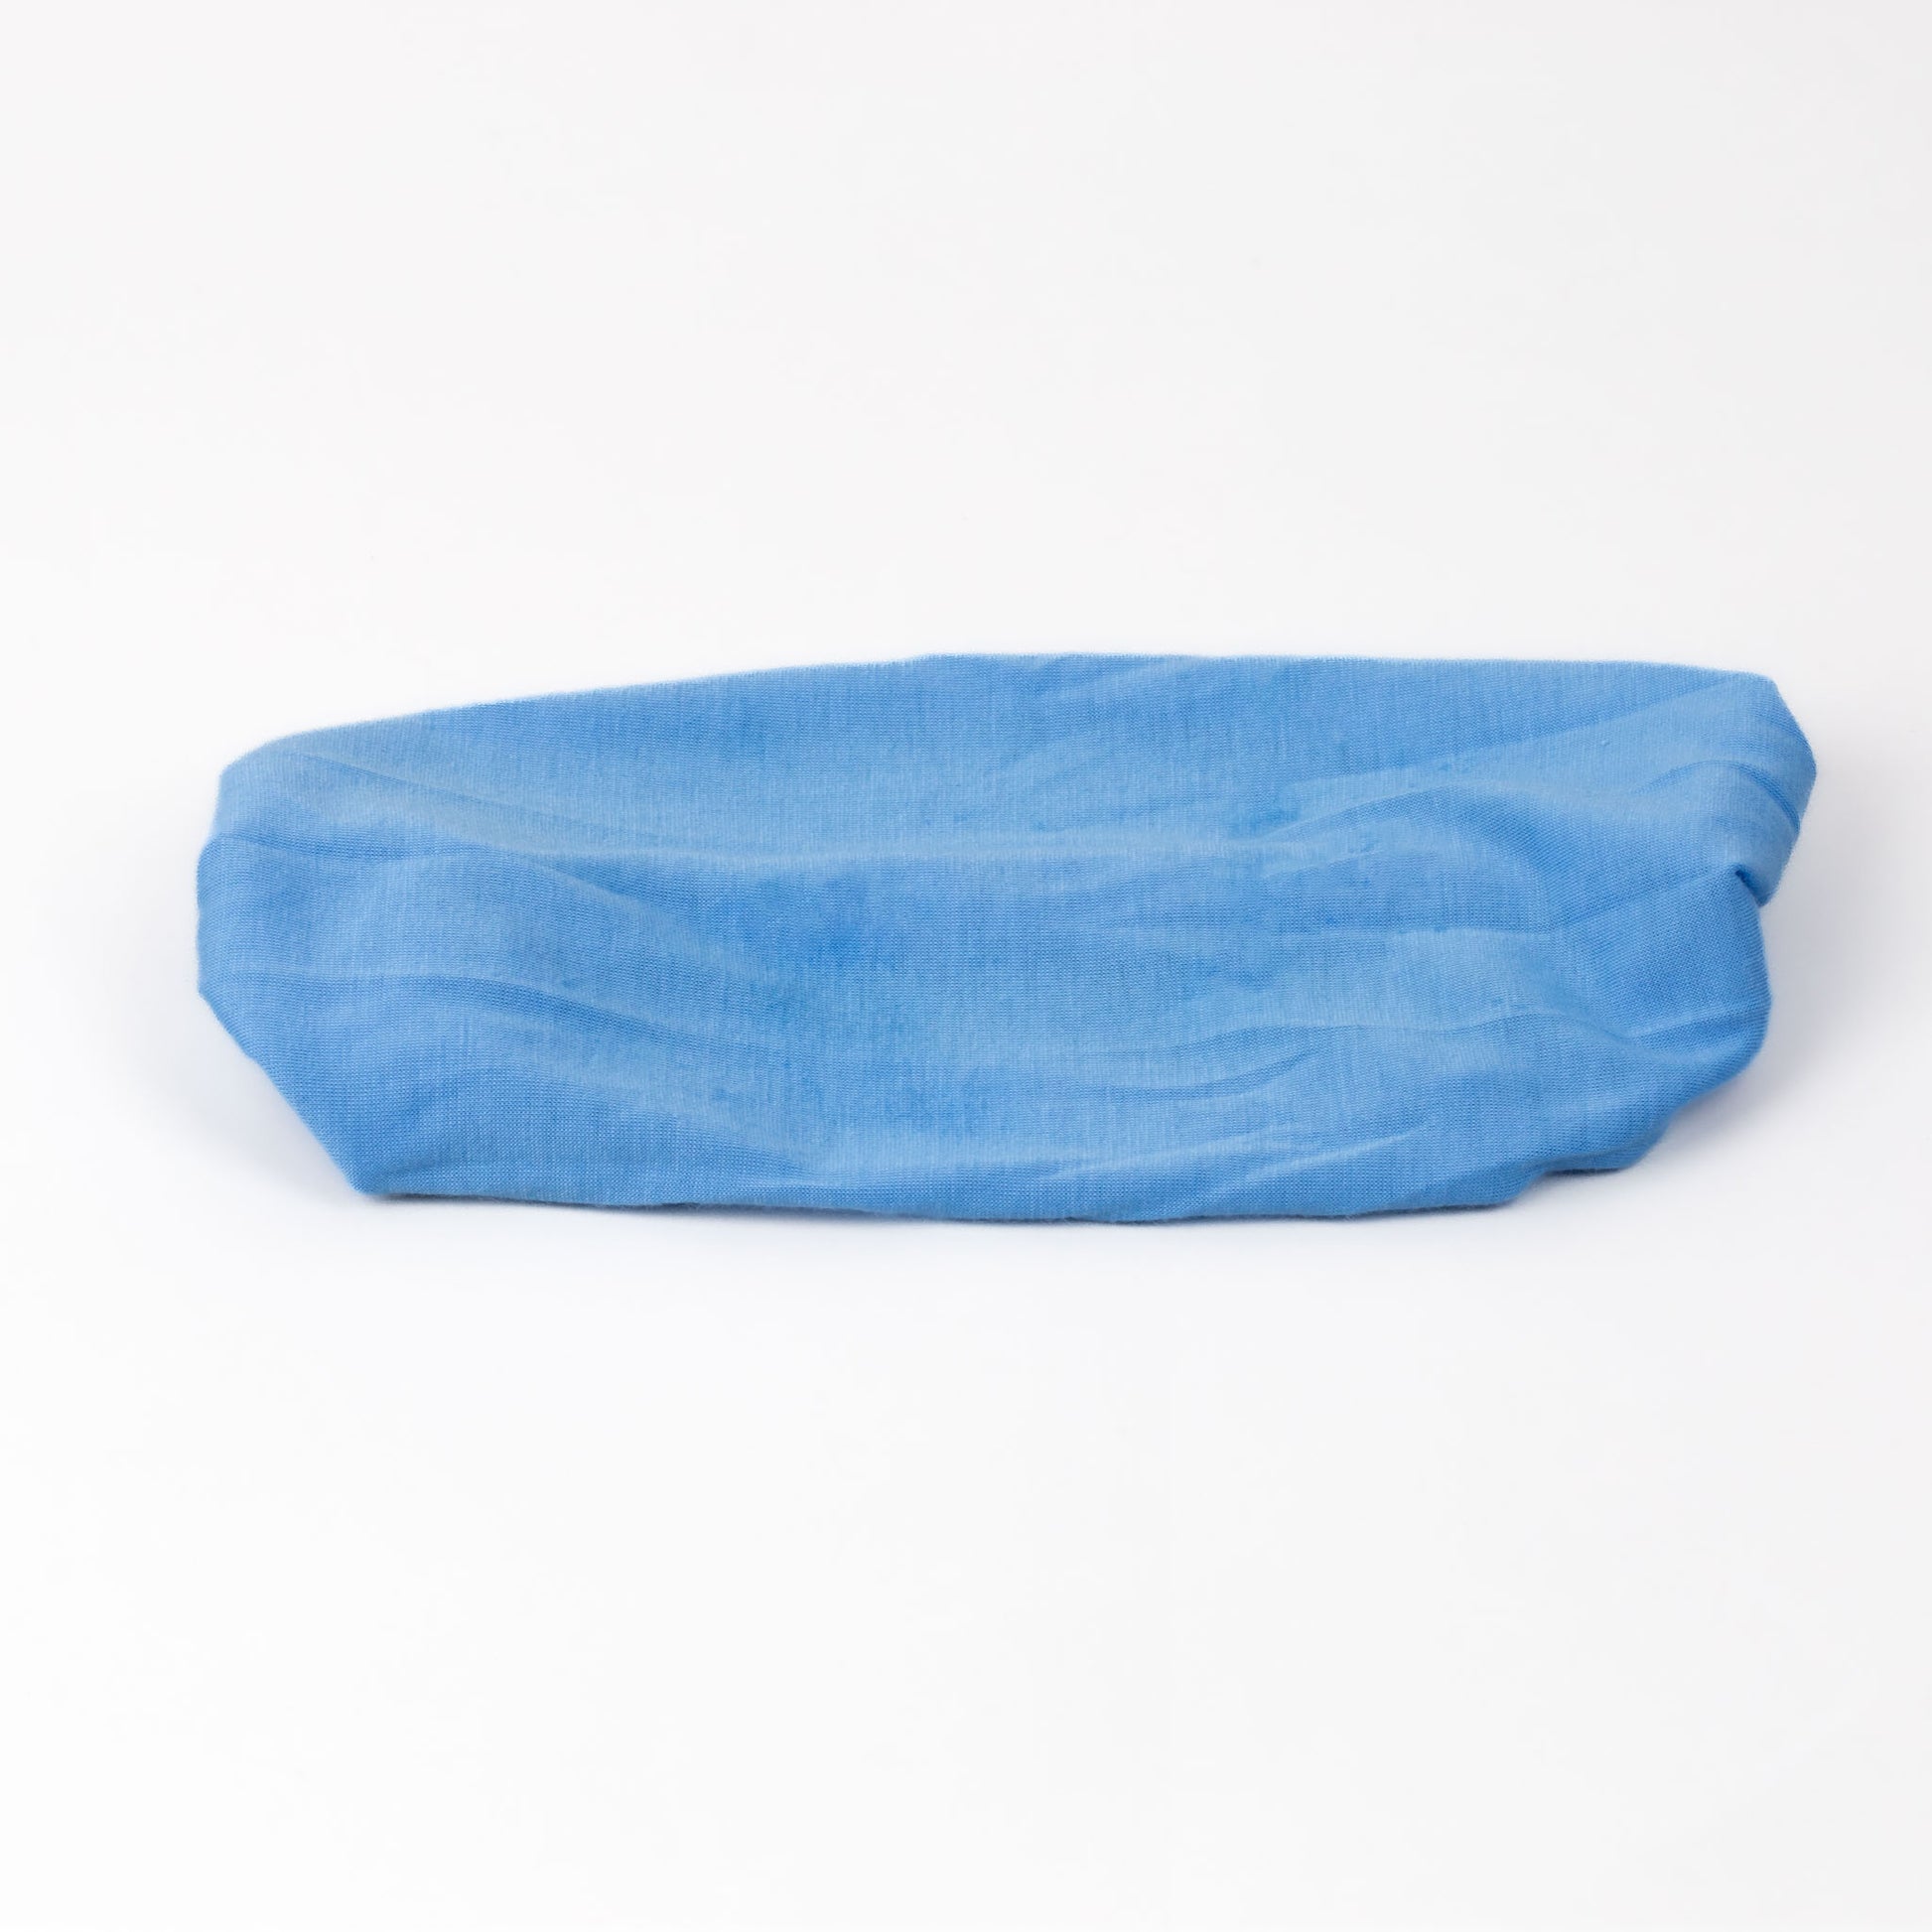 Bentiță de păr lată tip batic, moale și comodă din bumbac - Albastru